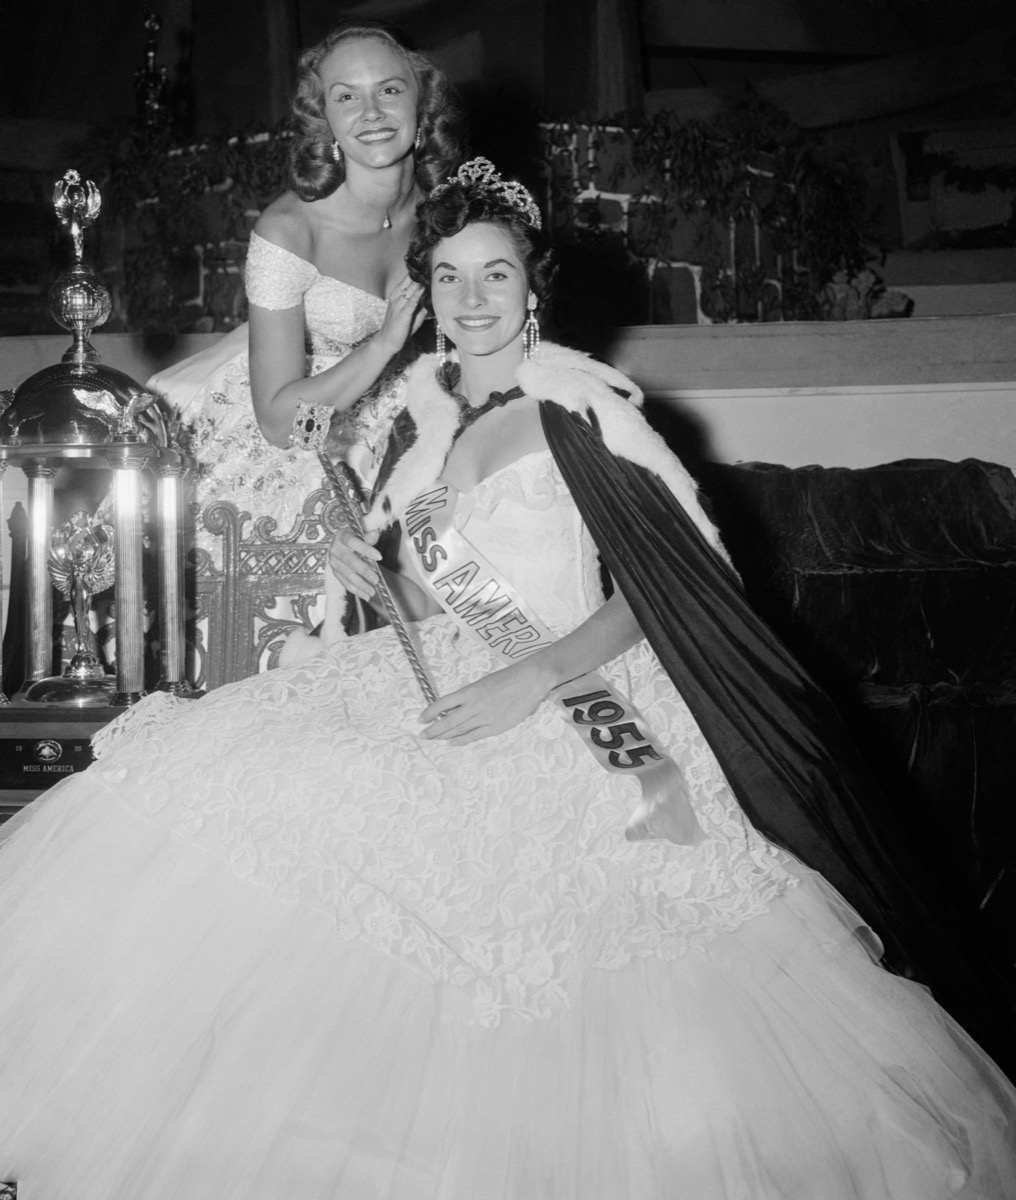 Lee Meriwether winning Miss America 1955